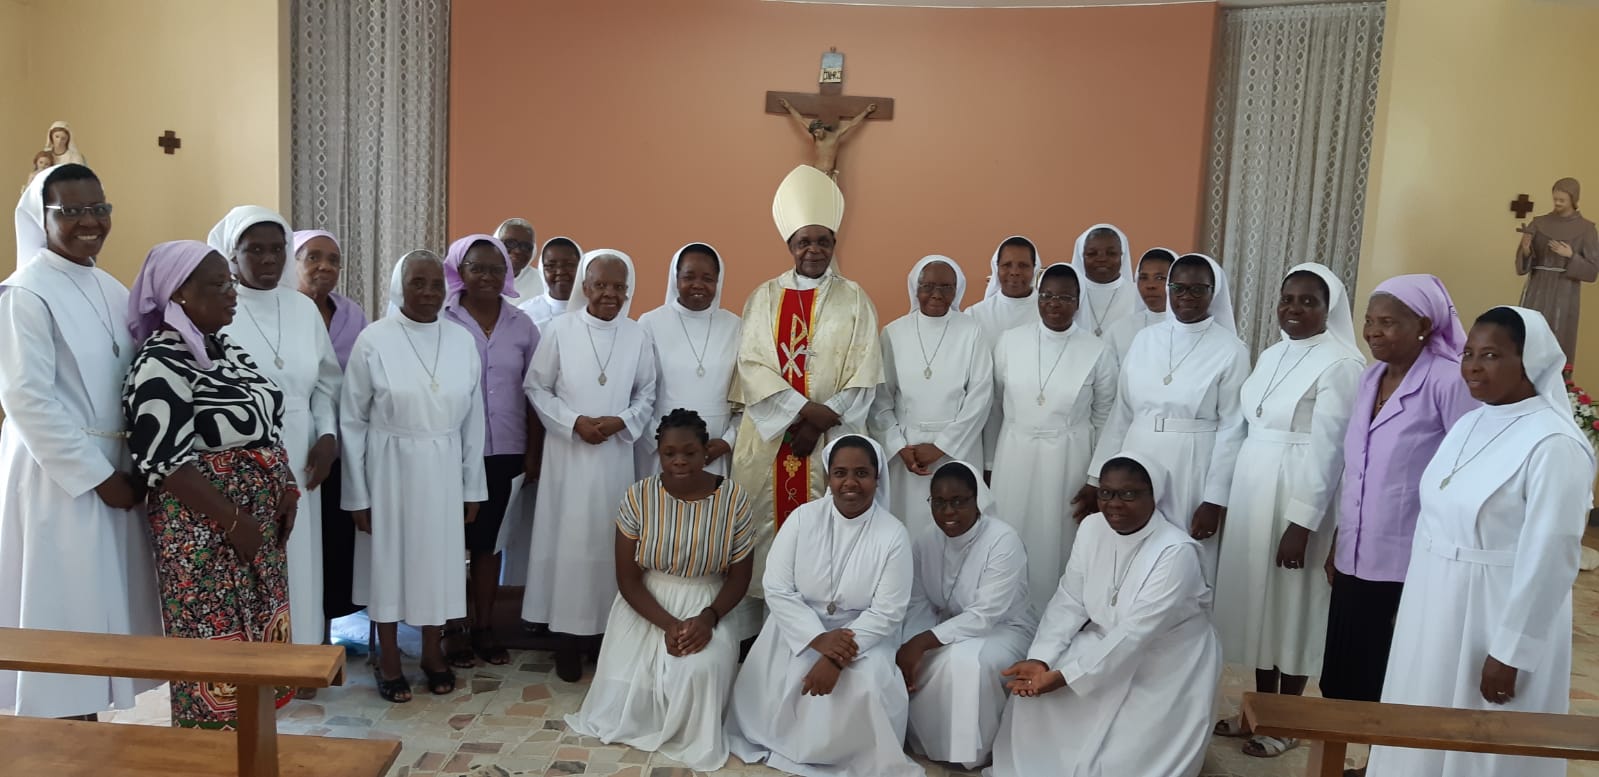 Comunidade da Cúria Provincial da PNSF, MAPUTO, Moçambique